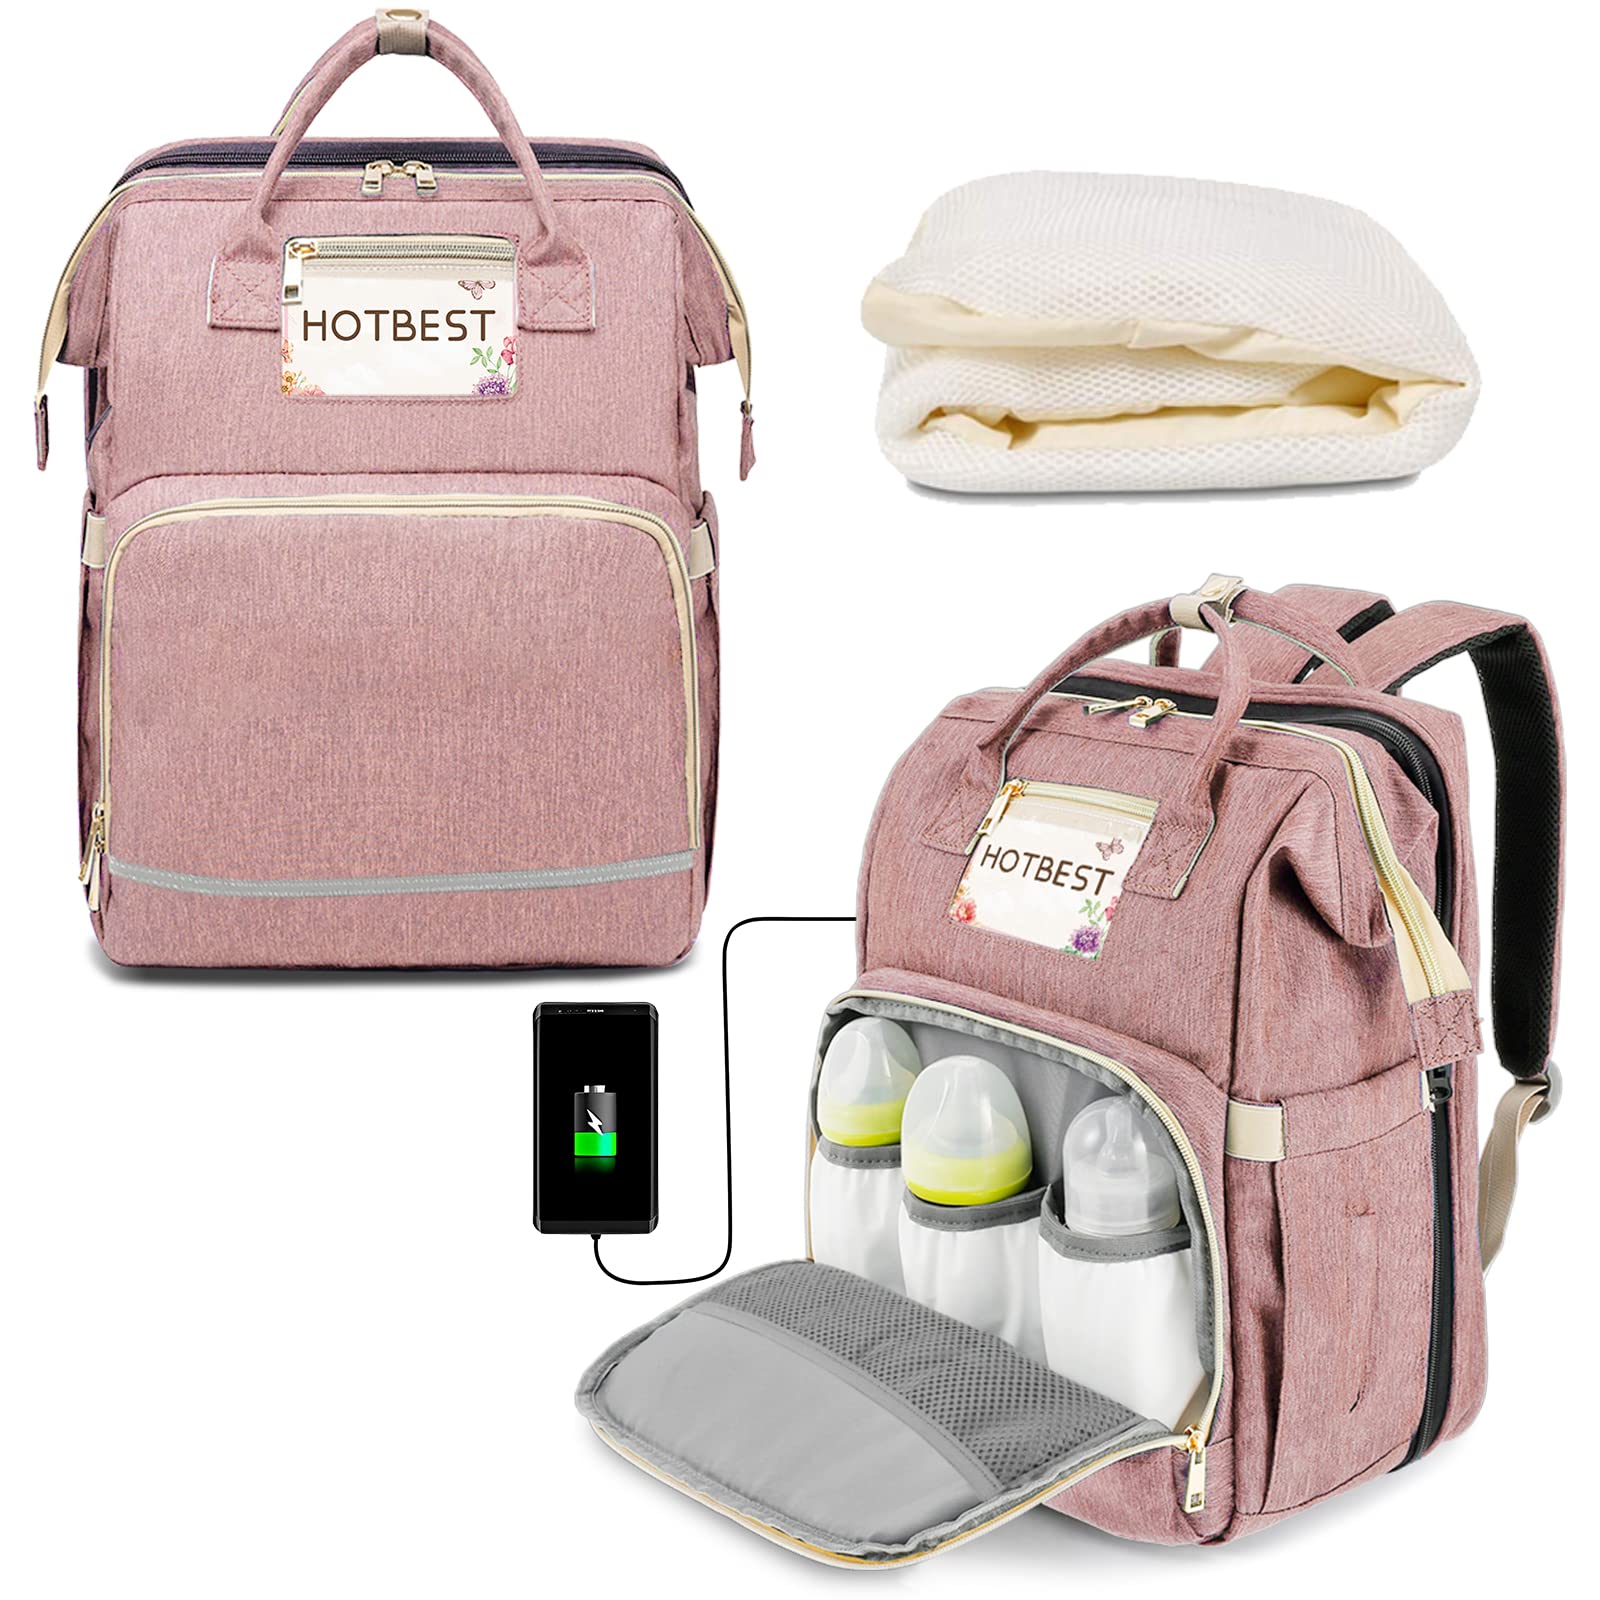 Meta Backpack Diaper Bag in Disney Princess – Petunia Pickle Bottom